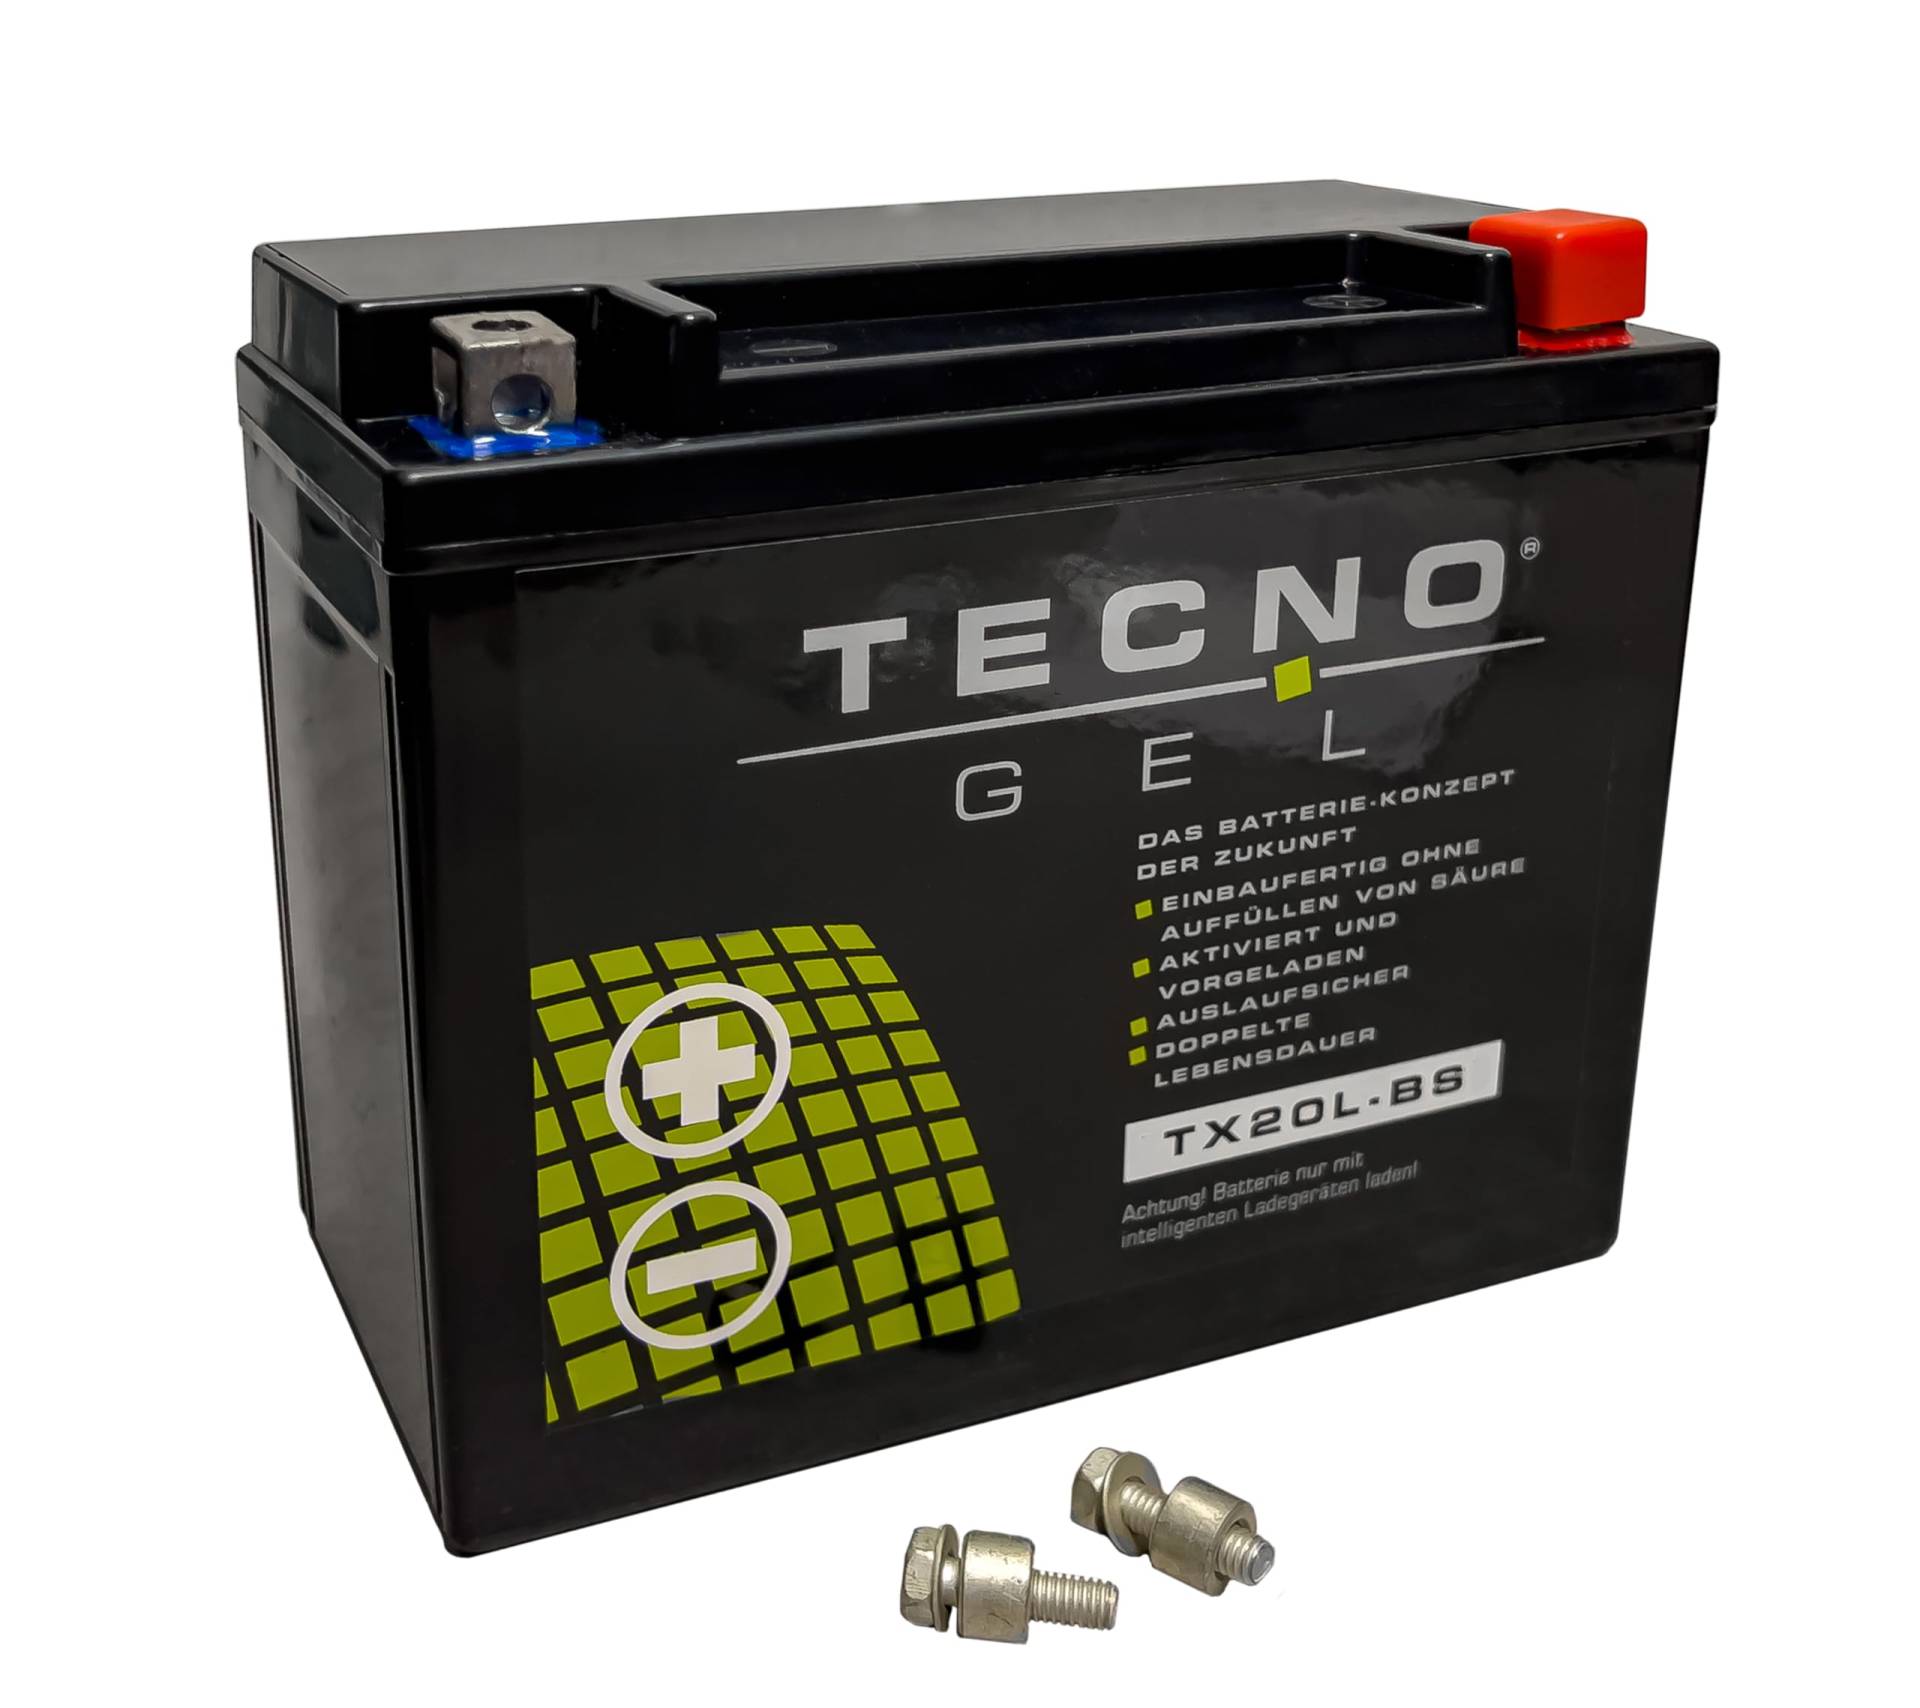 TECNO-GEL Motorrad-Batterie für YTX20L-BS für HARLEY DAVIDSON FXD... 1340/1450/1584/1690 Dyna 1991-2017, 12V Gel-Batterie 20Ah (DIN 82000), 175x87x155 mm von Wirth-Federn